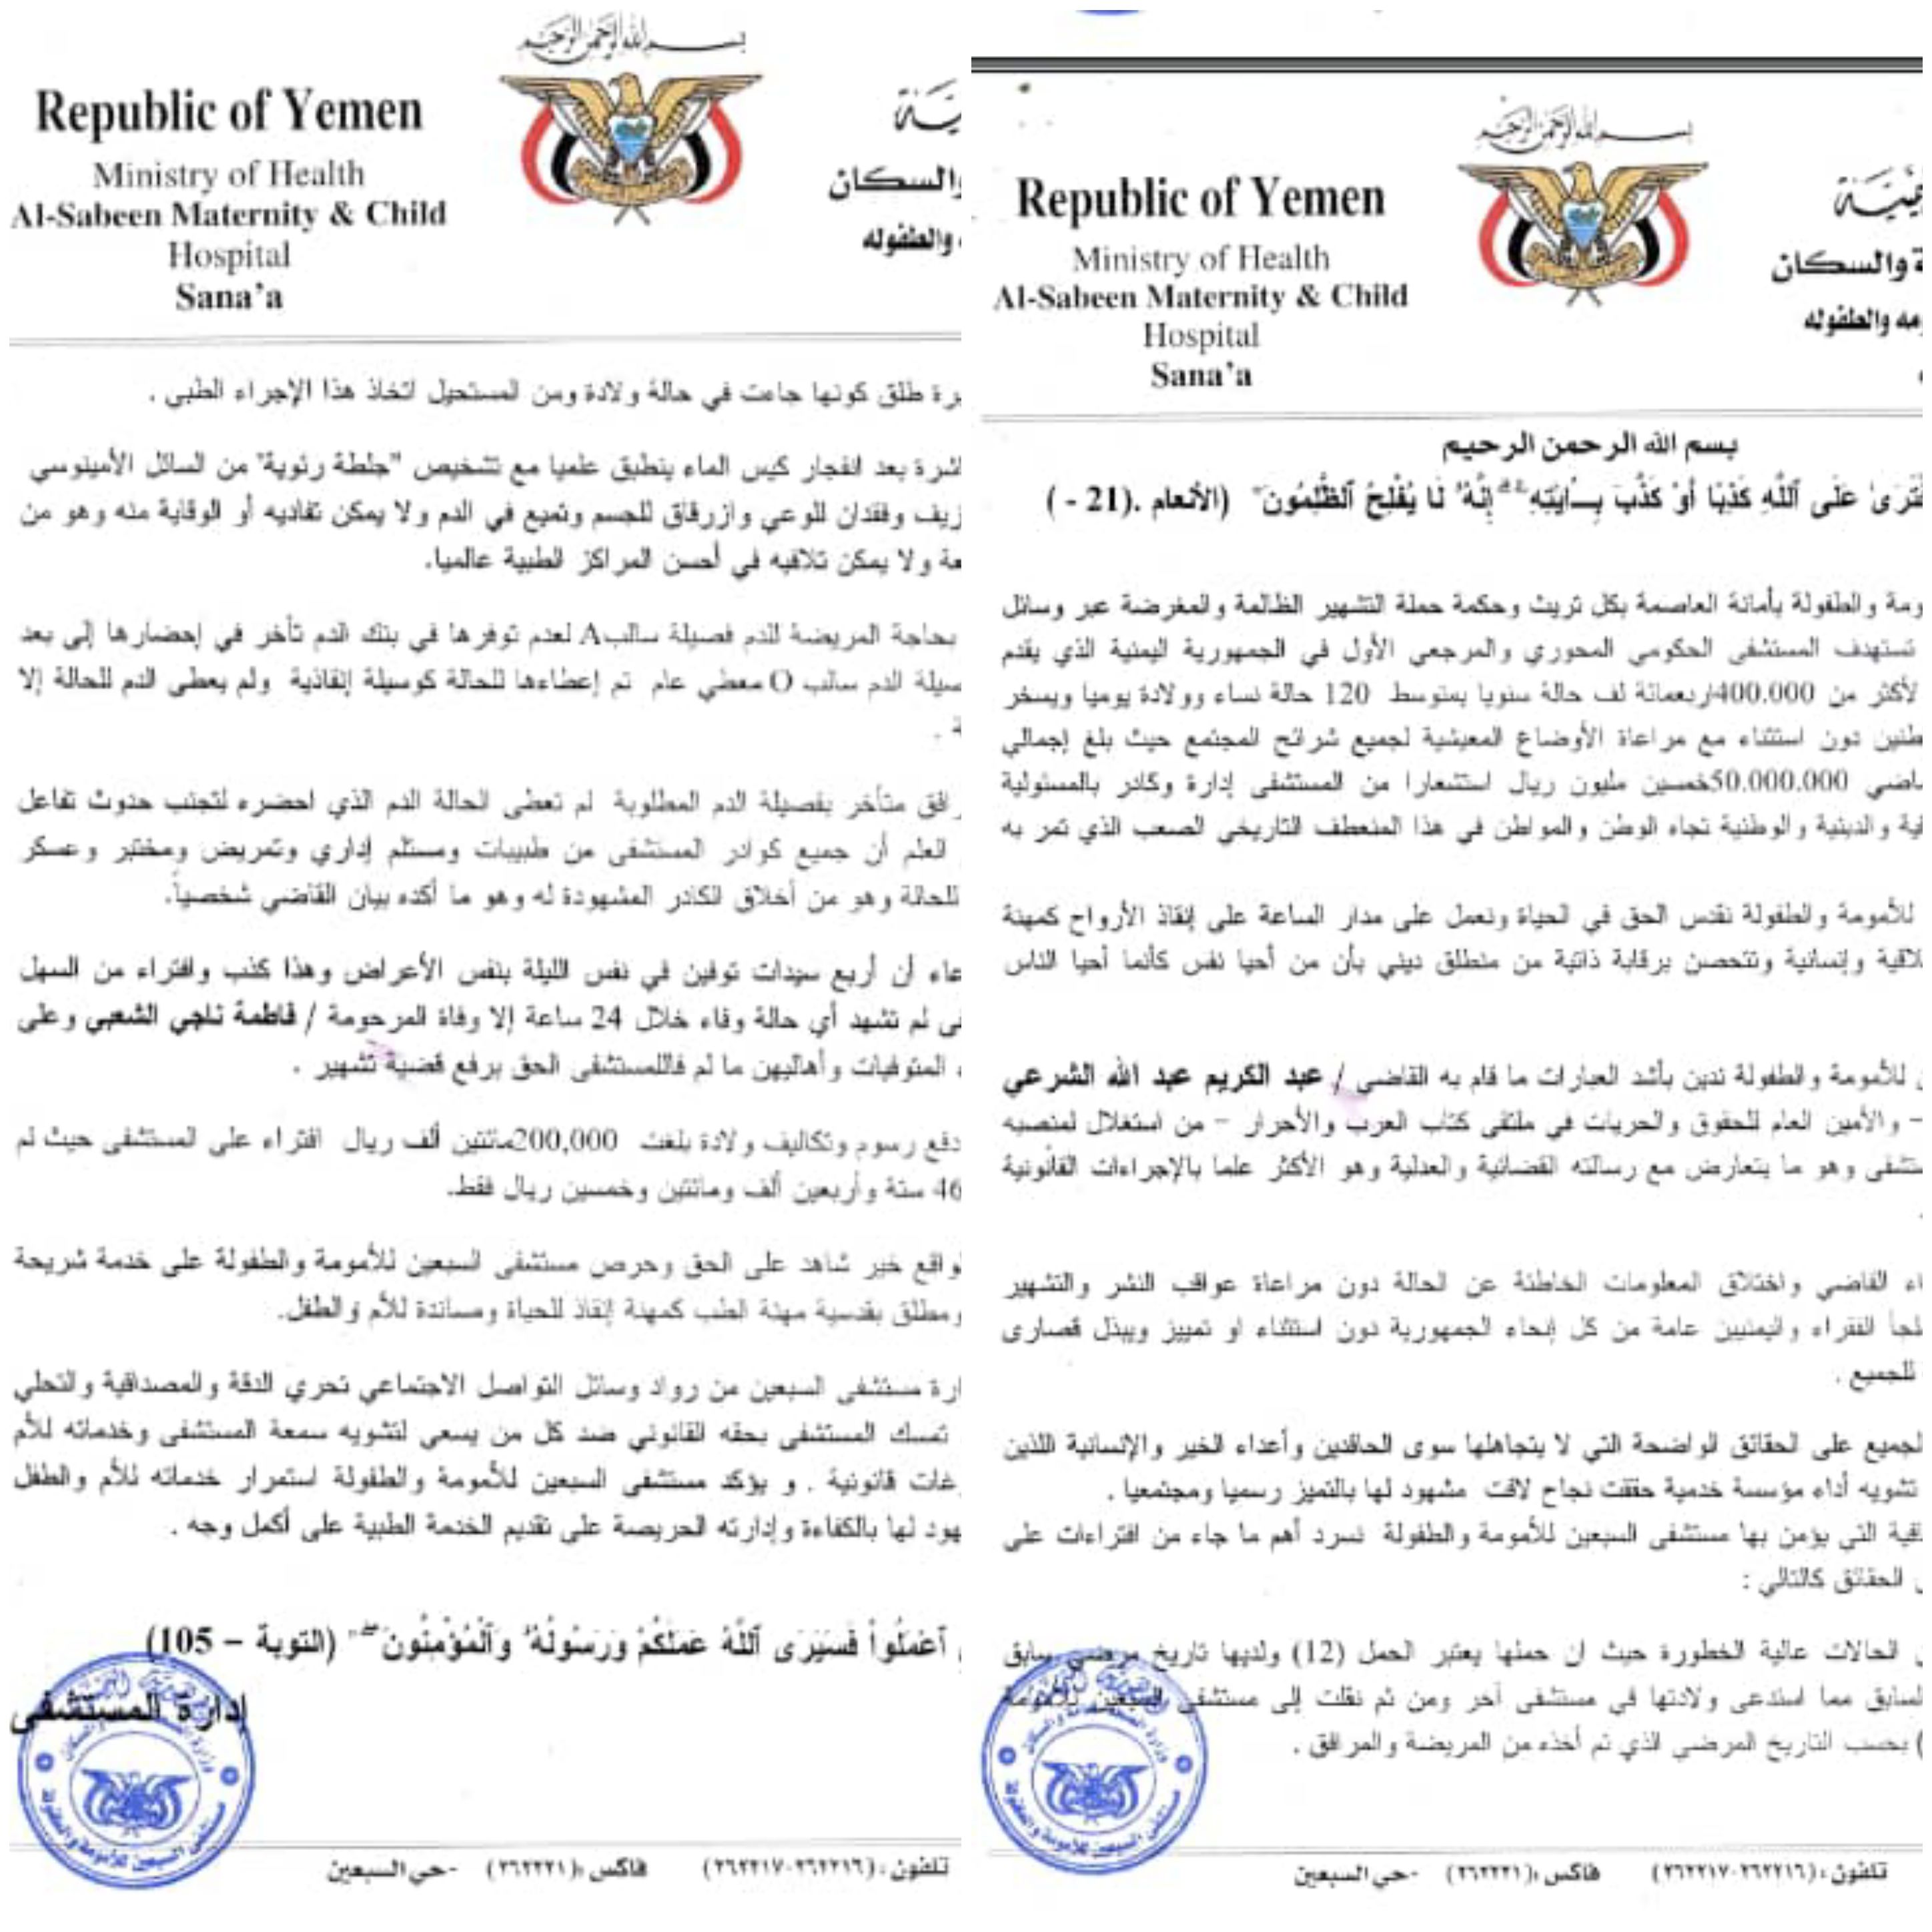 عاجل مستشفى السبعين بصنعاء يصدر بيان هام ويهدد برفع دعوة قضائية على القاضي الشرعي عضو رابطة علماء اليمن